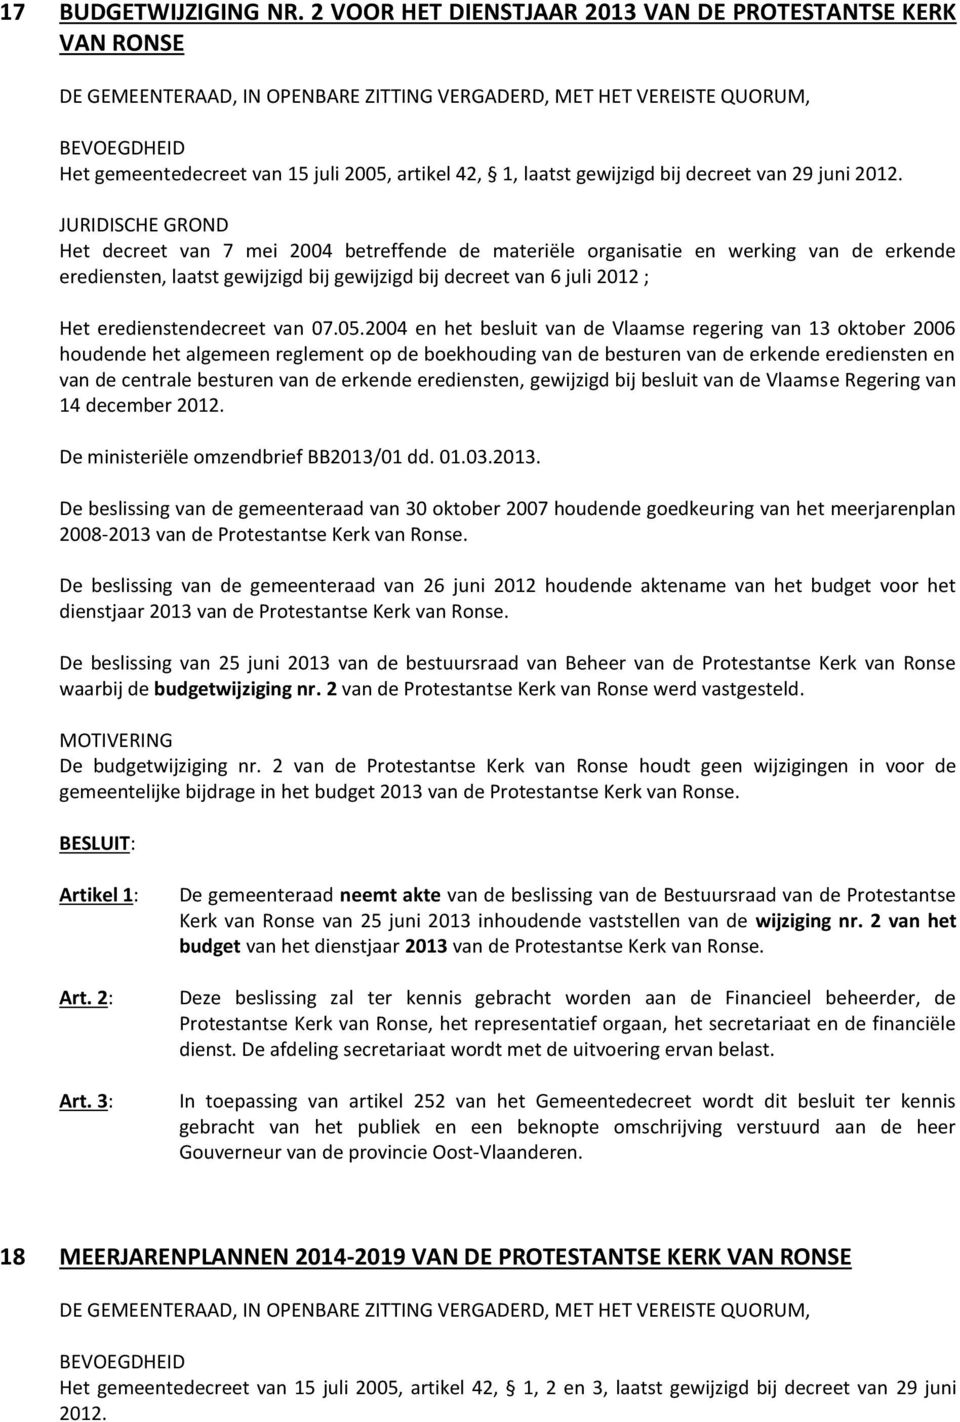 2004 en het besluit van de Vlaamse regering van 13 oktober 2006 houdende het algemeen reglement op de boekhouding van de besturen van de erkende erediensten en van de centrale besturen van de erkende